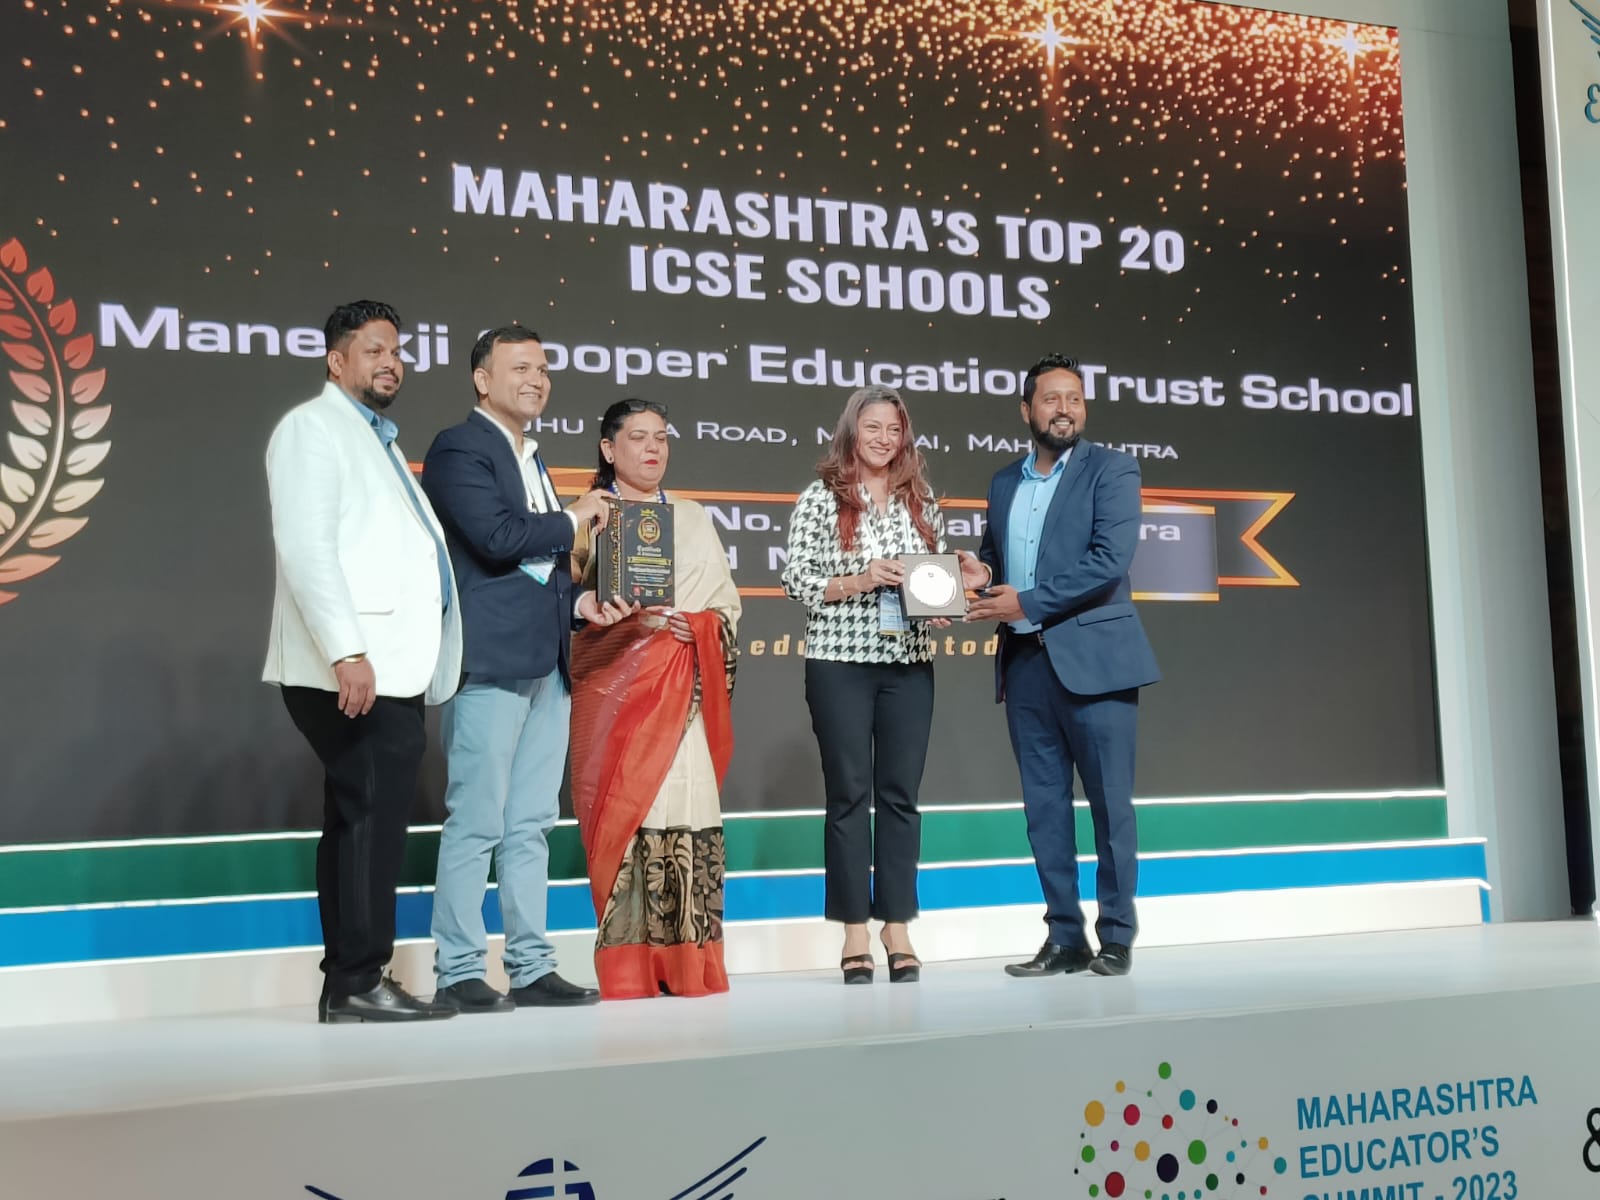 Maharashtra's Top 20 ICSE schools